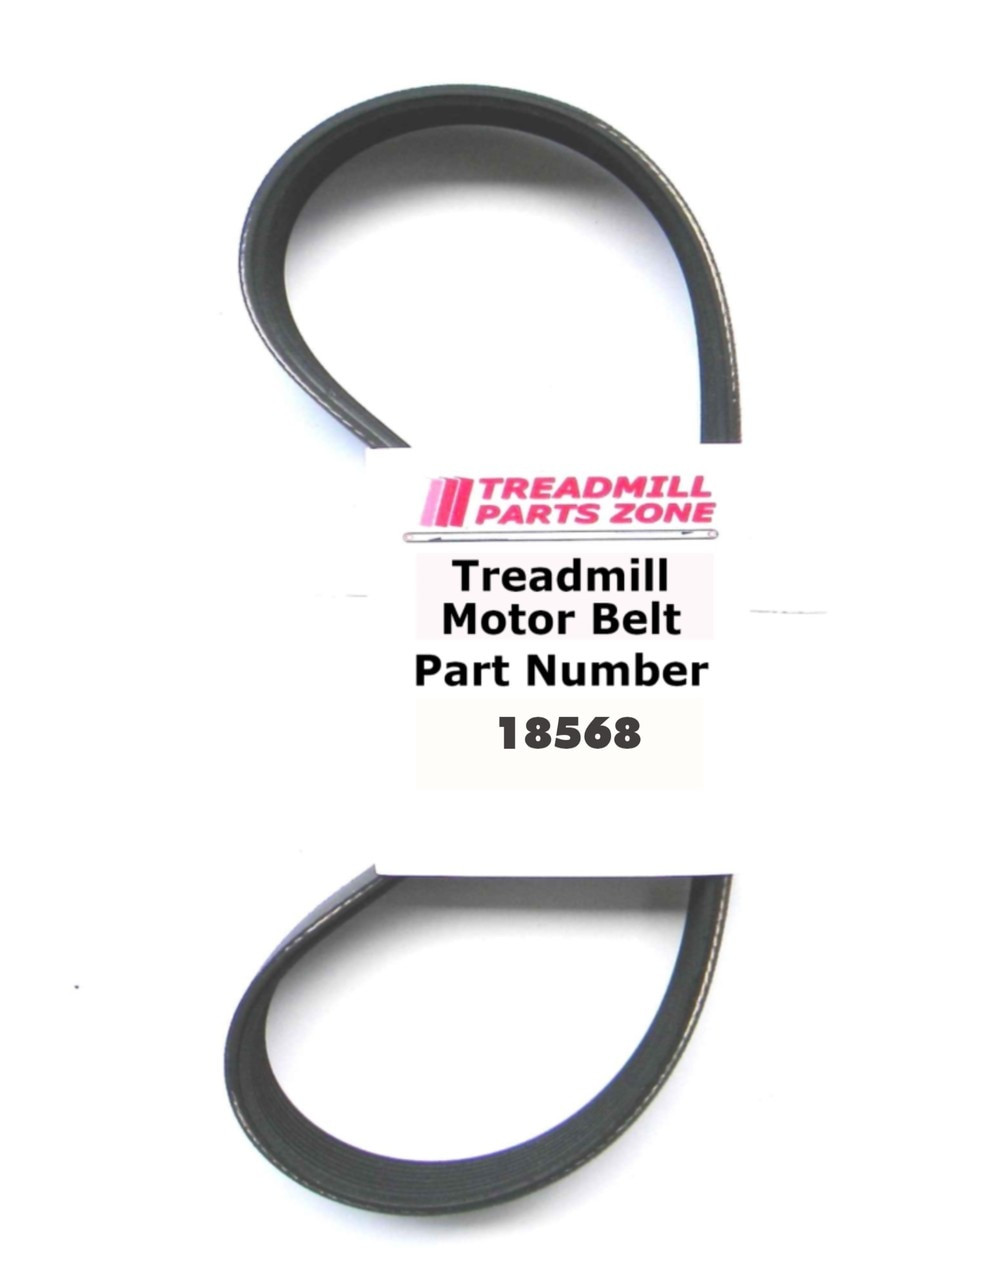 Nautilus Treadclimber Motor Belt Part Number 18568